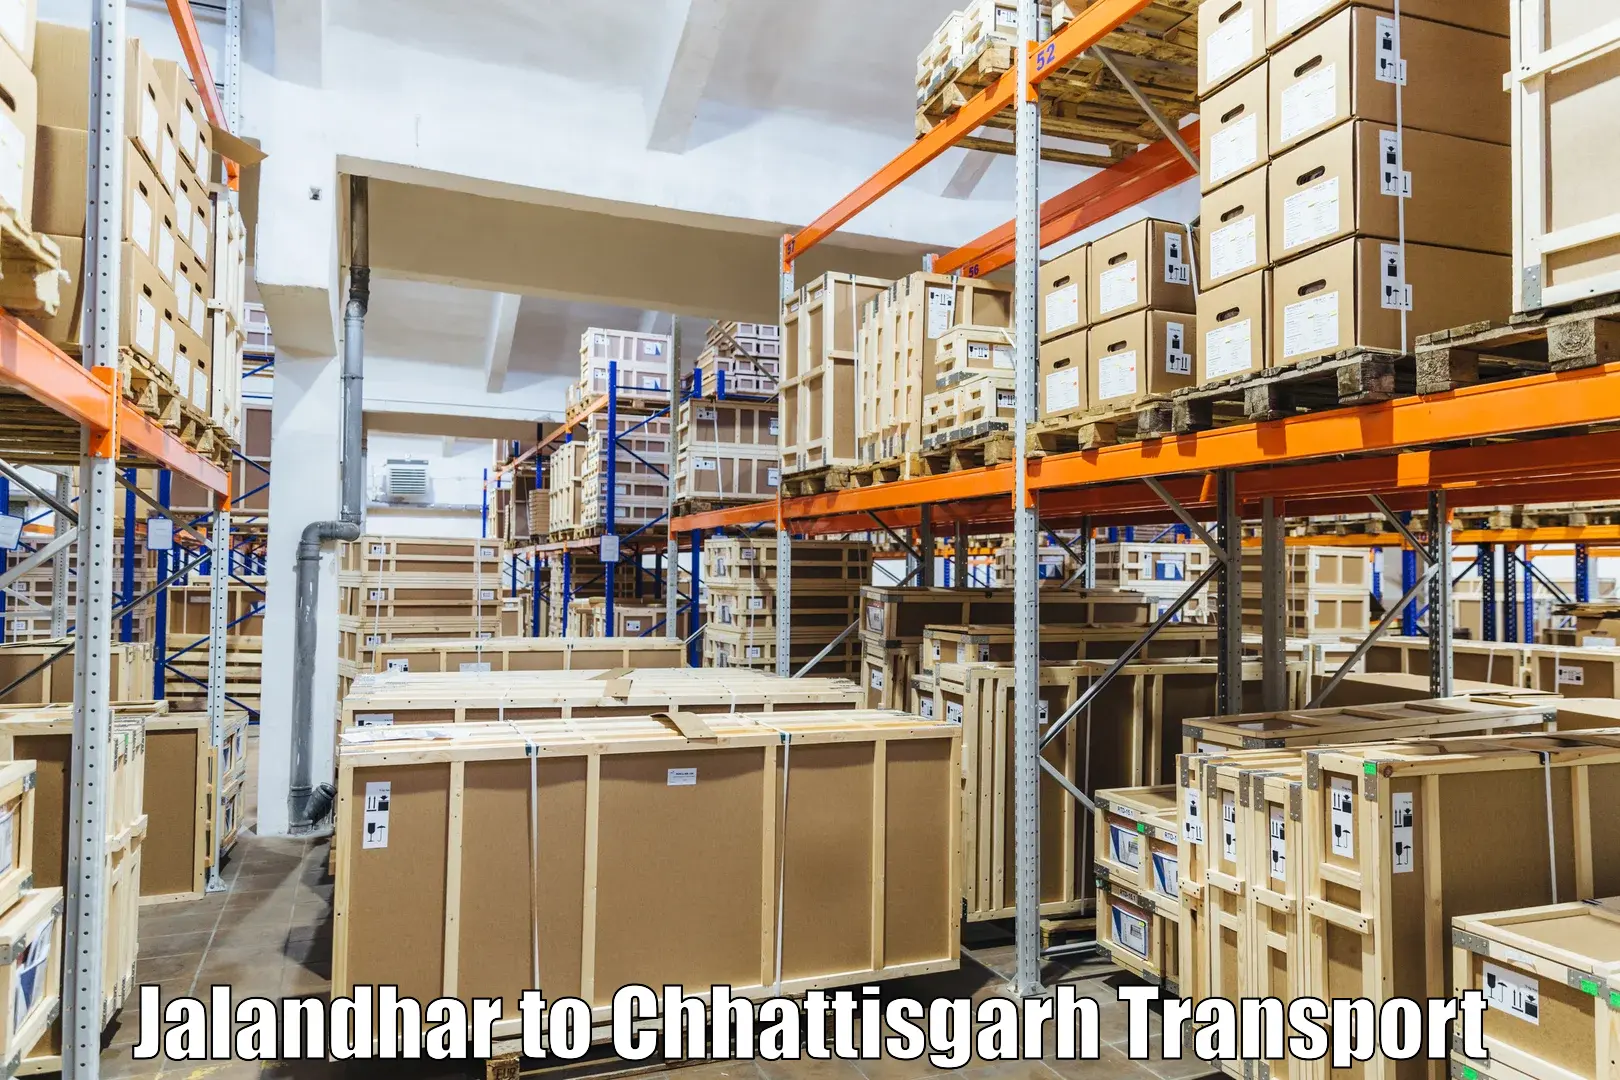 Transportation solution services Jalandhar to Raigarh Chhattisgarh